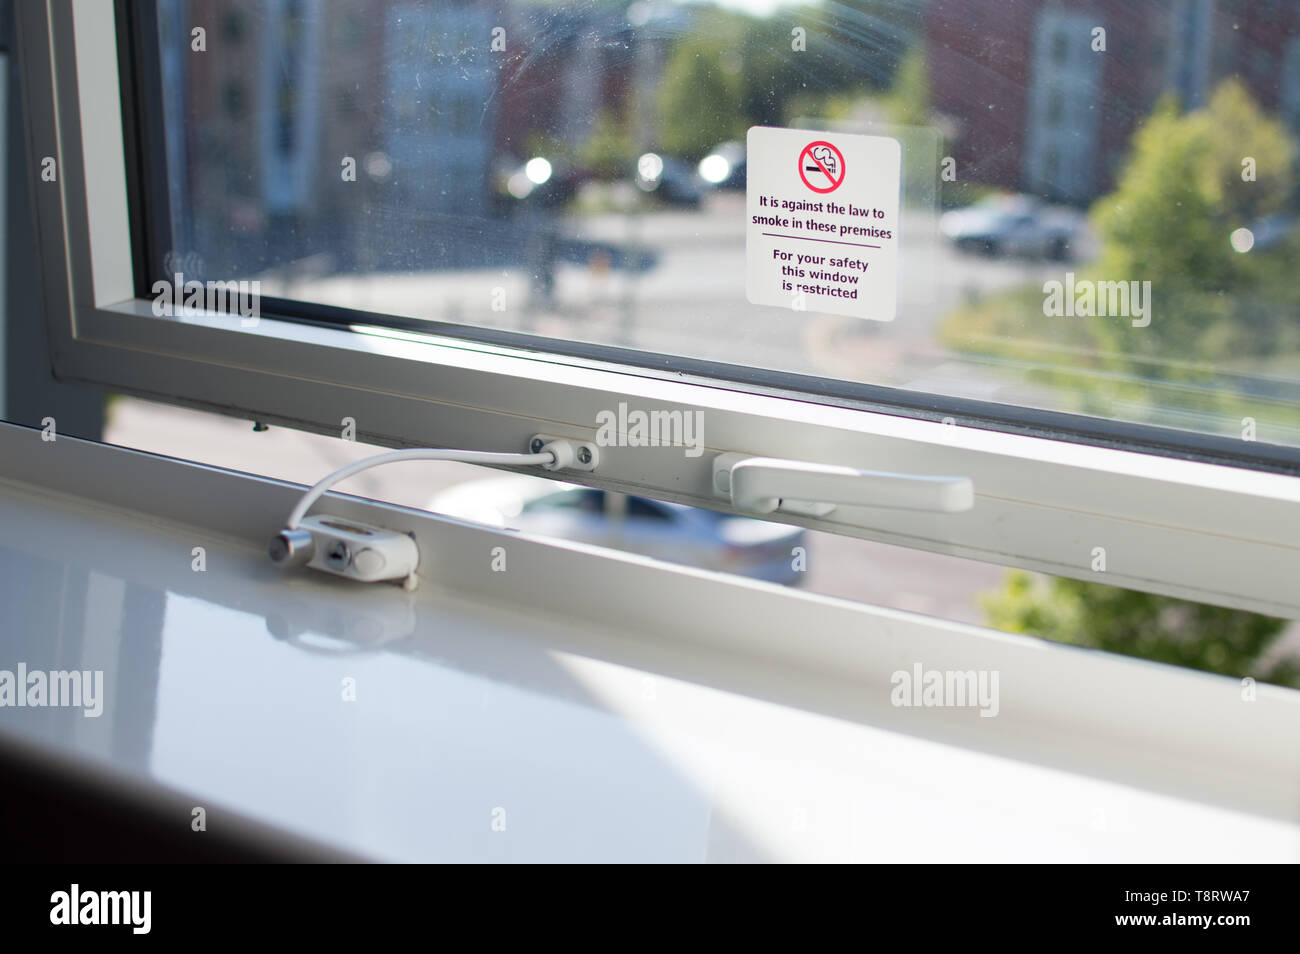 Ein Rauchverbot Schild und Fenster Einschränkung Informationen über ein Fenster Glas in einem Hotel Zimmer Stockfoto